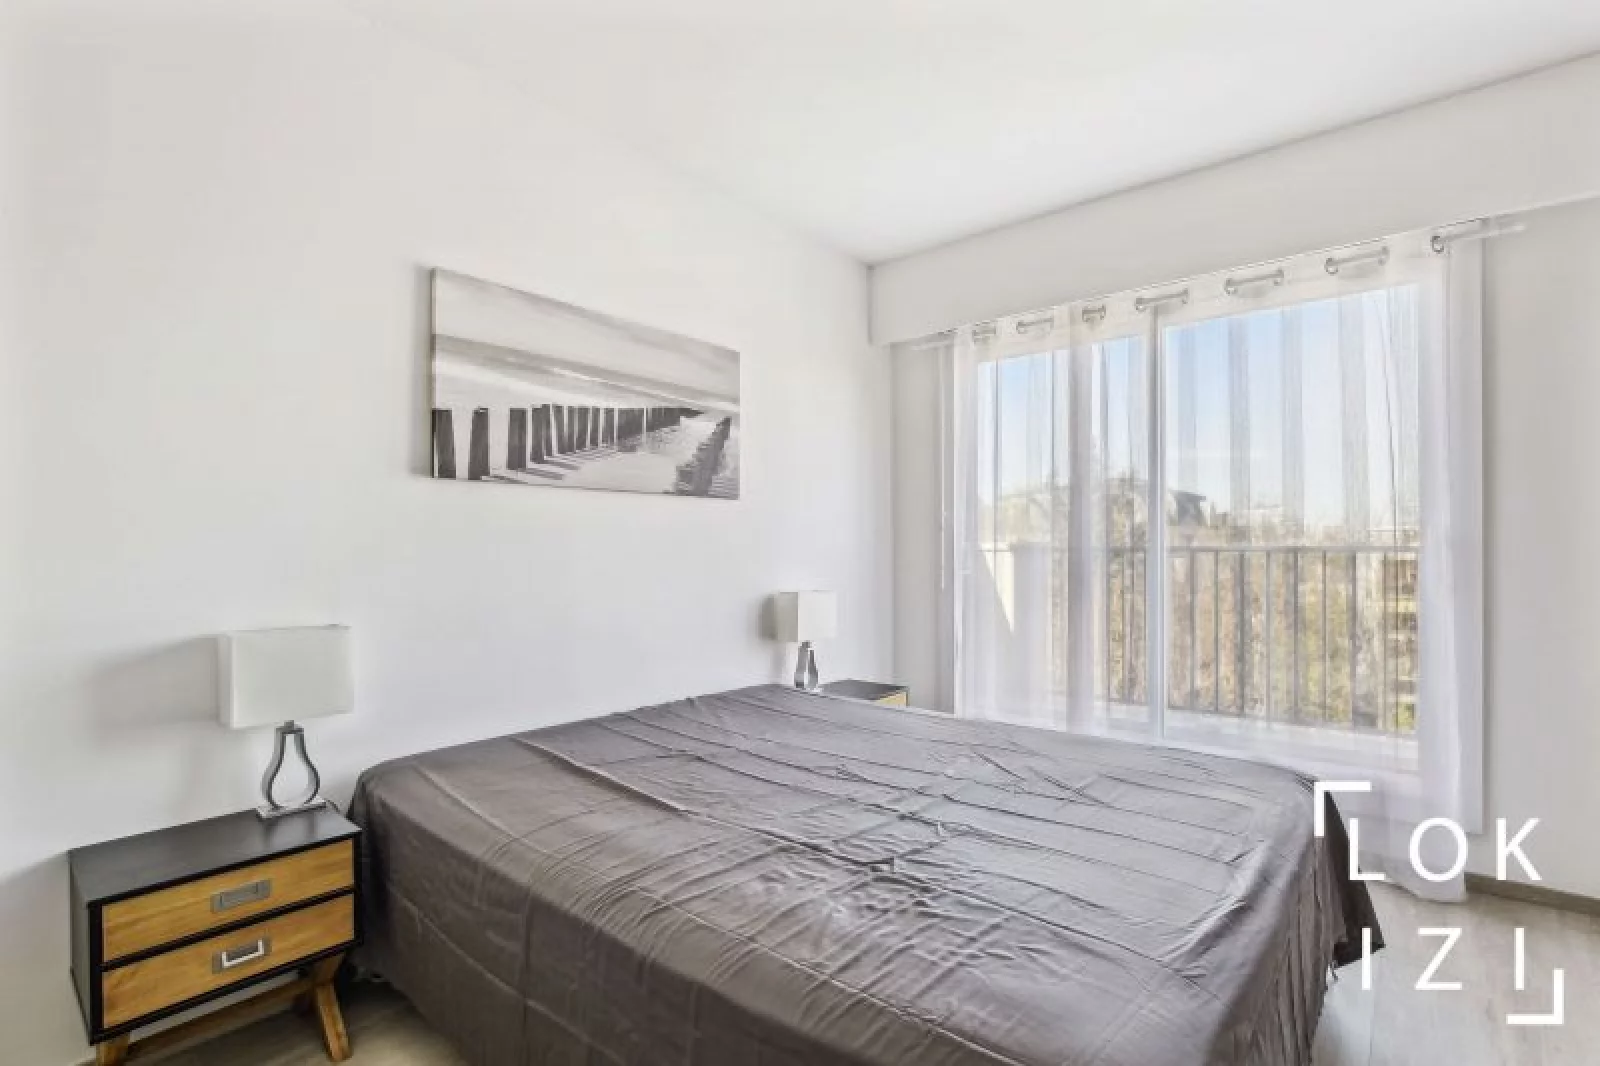  Location appartement meublé 3 pièces 70m² (Paris ouest / Rueil-Malmaison 92)